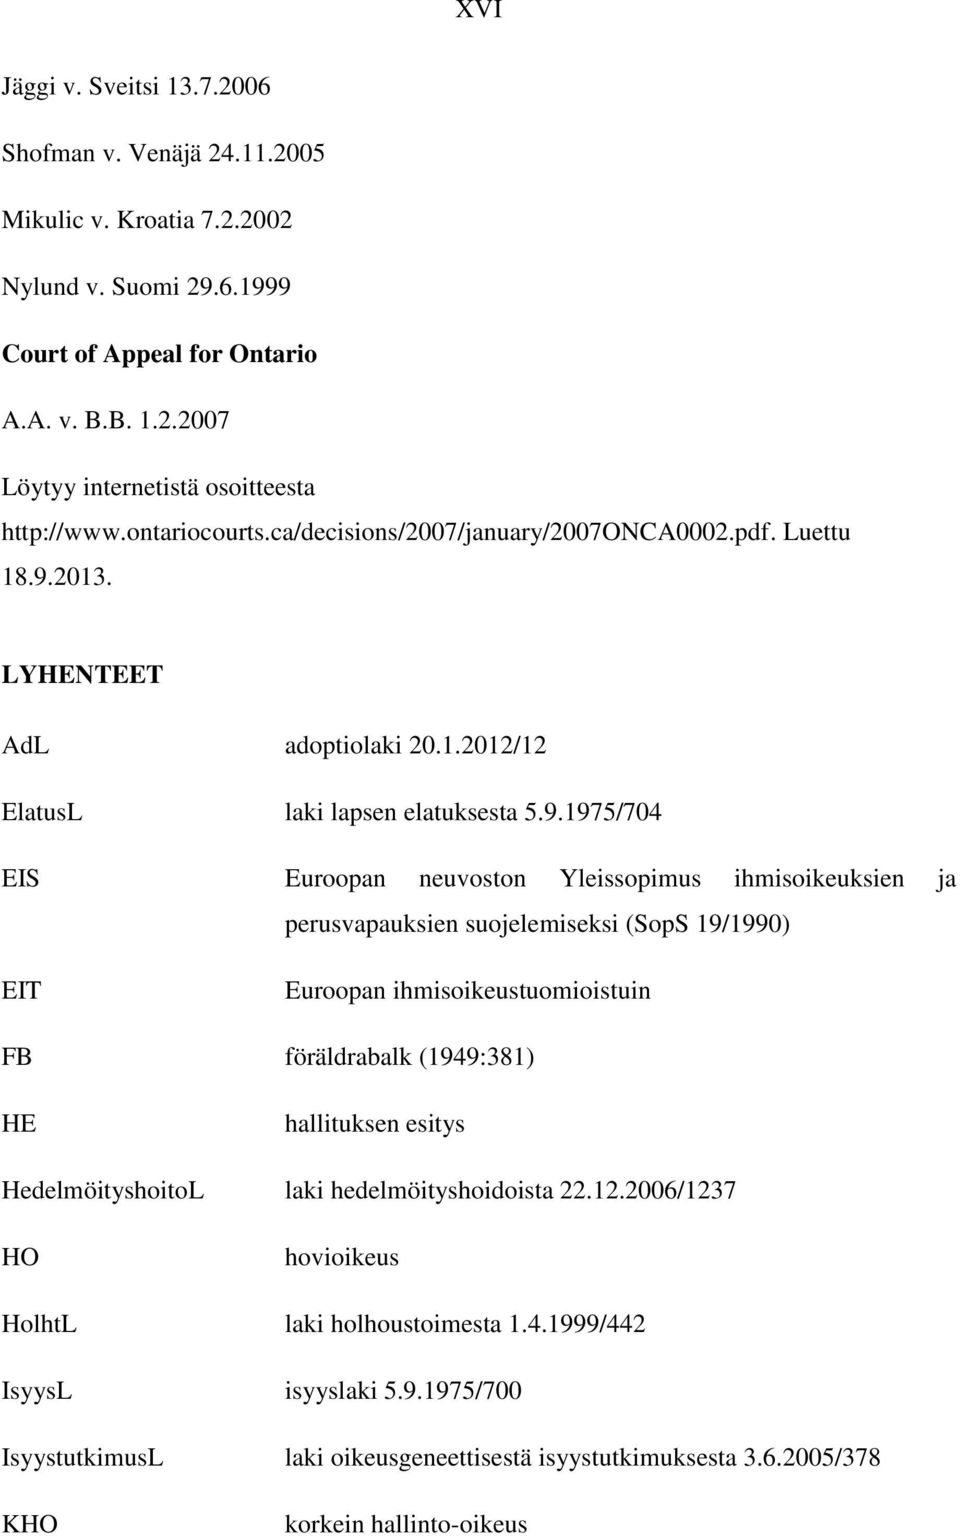 2013. LYHENTEET AdL adoptiolaki 20.1.2012/12 ElatusL laki lapsen elatuksesta 5.9.